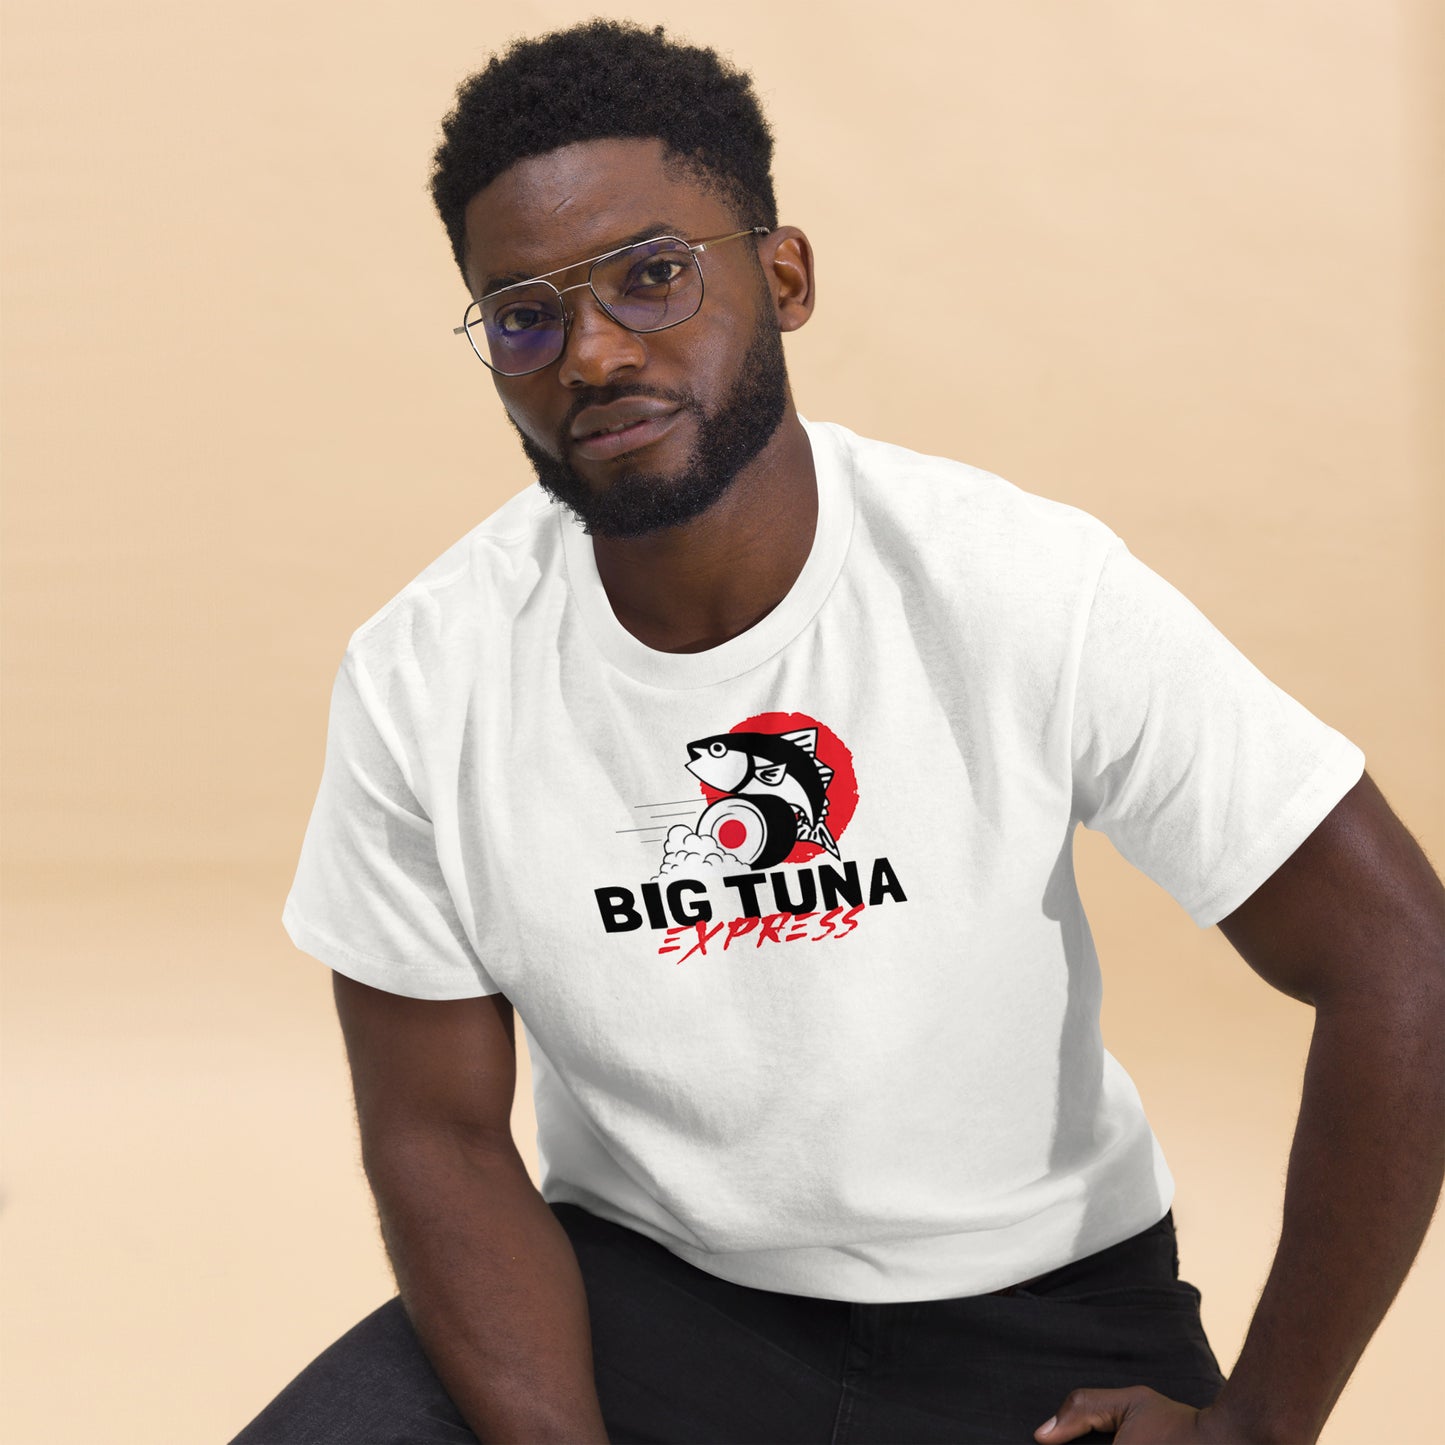 Big Tuna Express Classic T-shirt